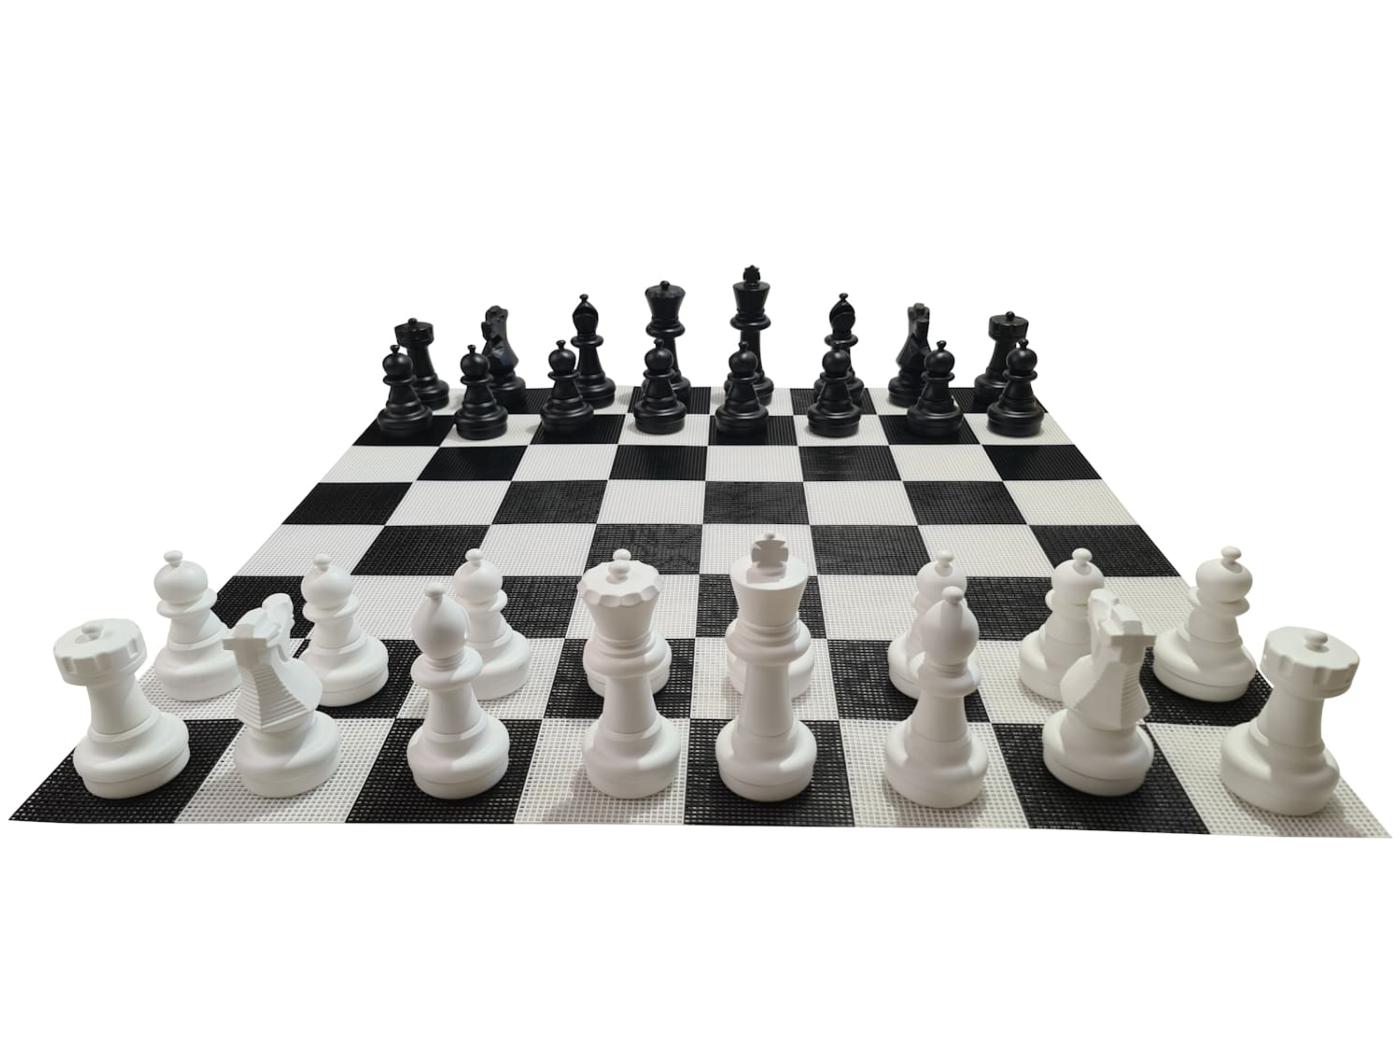 Joc d'escacs gegant amb tauler rígid gegant inclòs joc complet sobre tauler